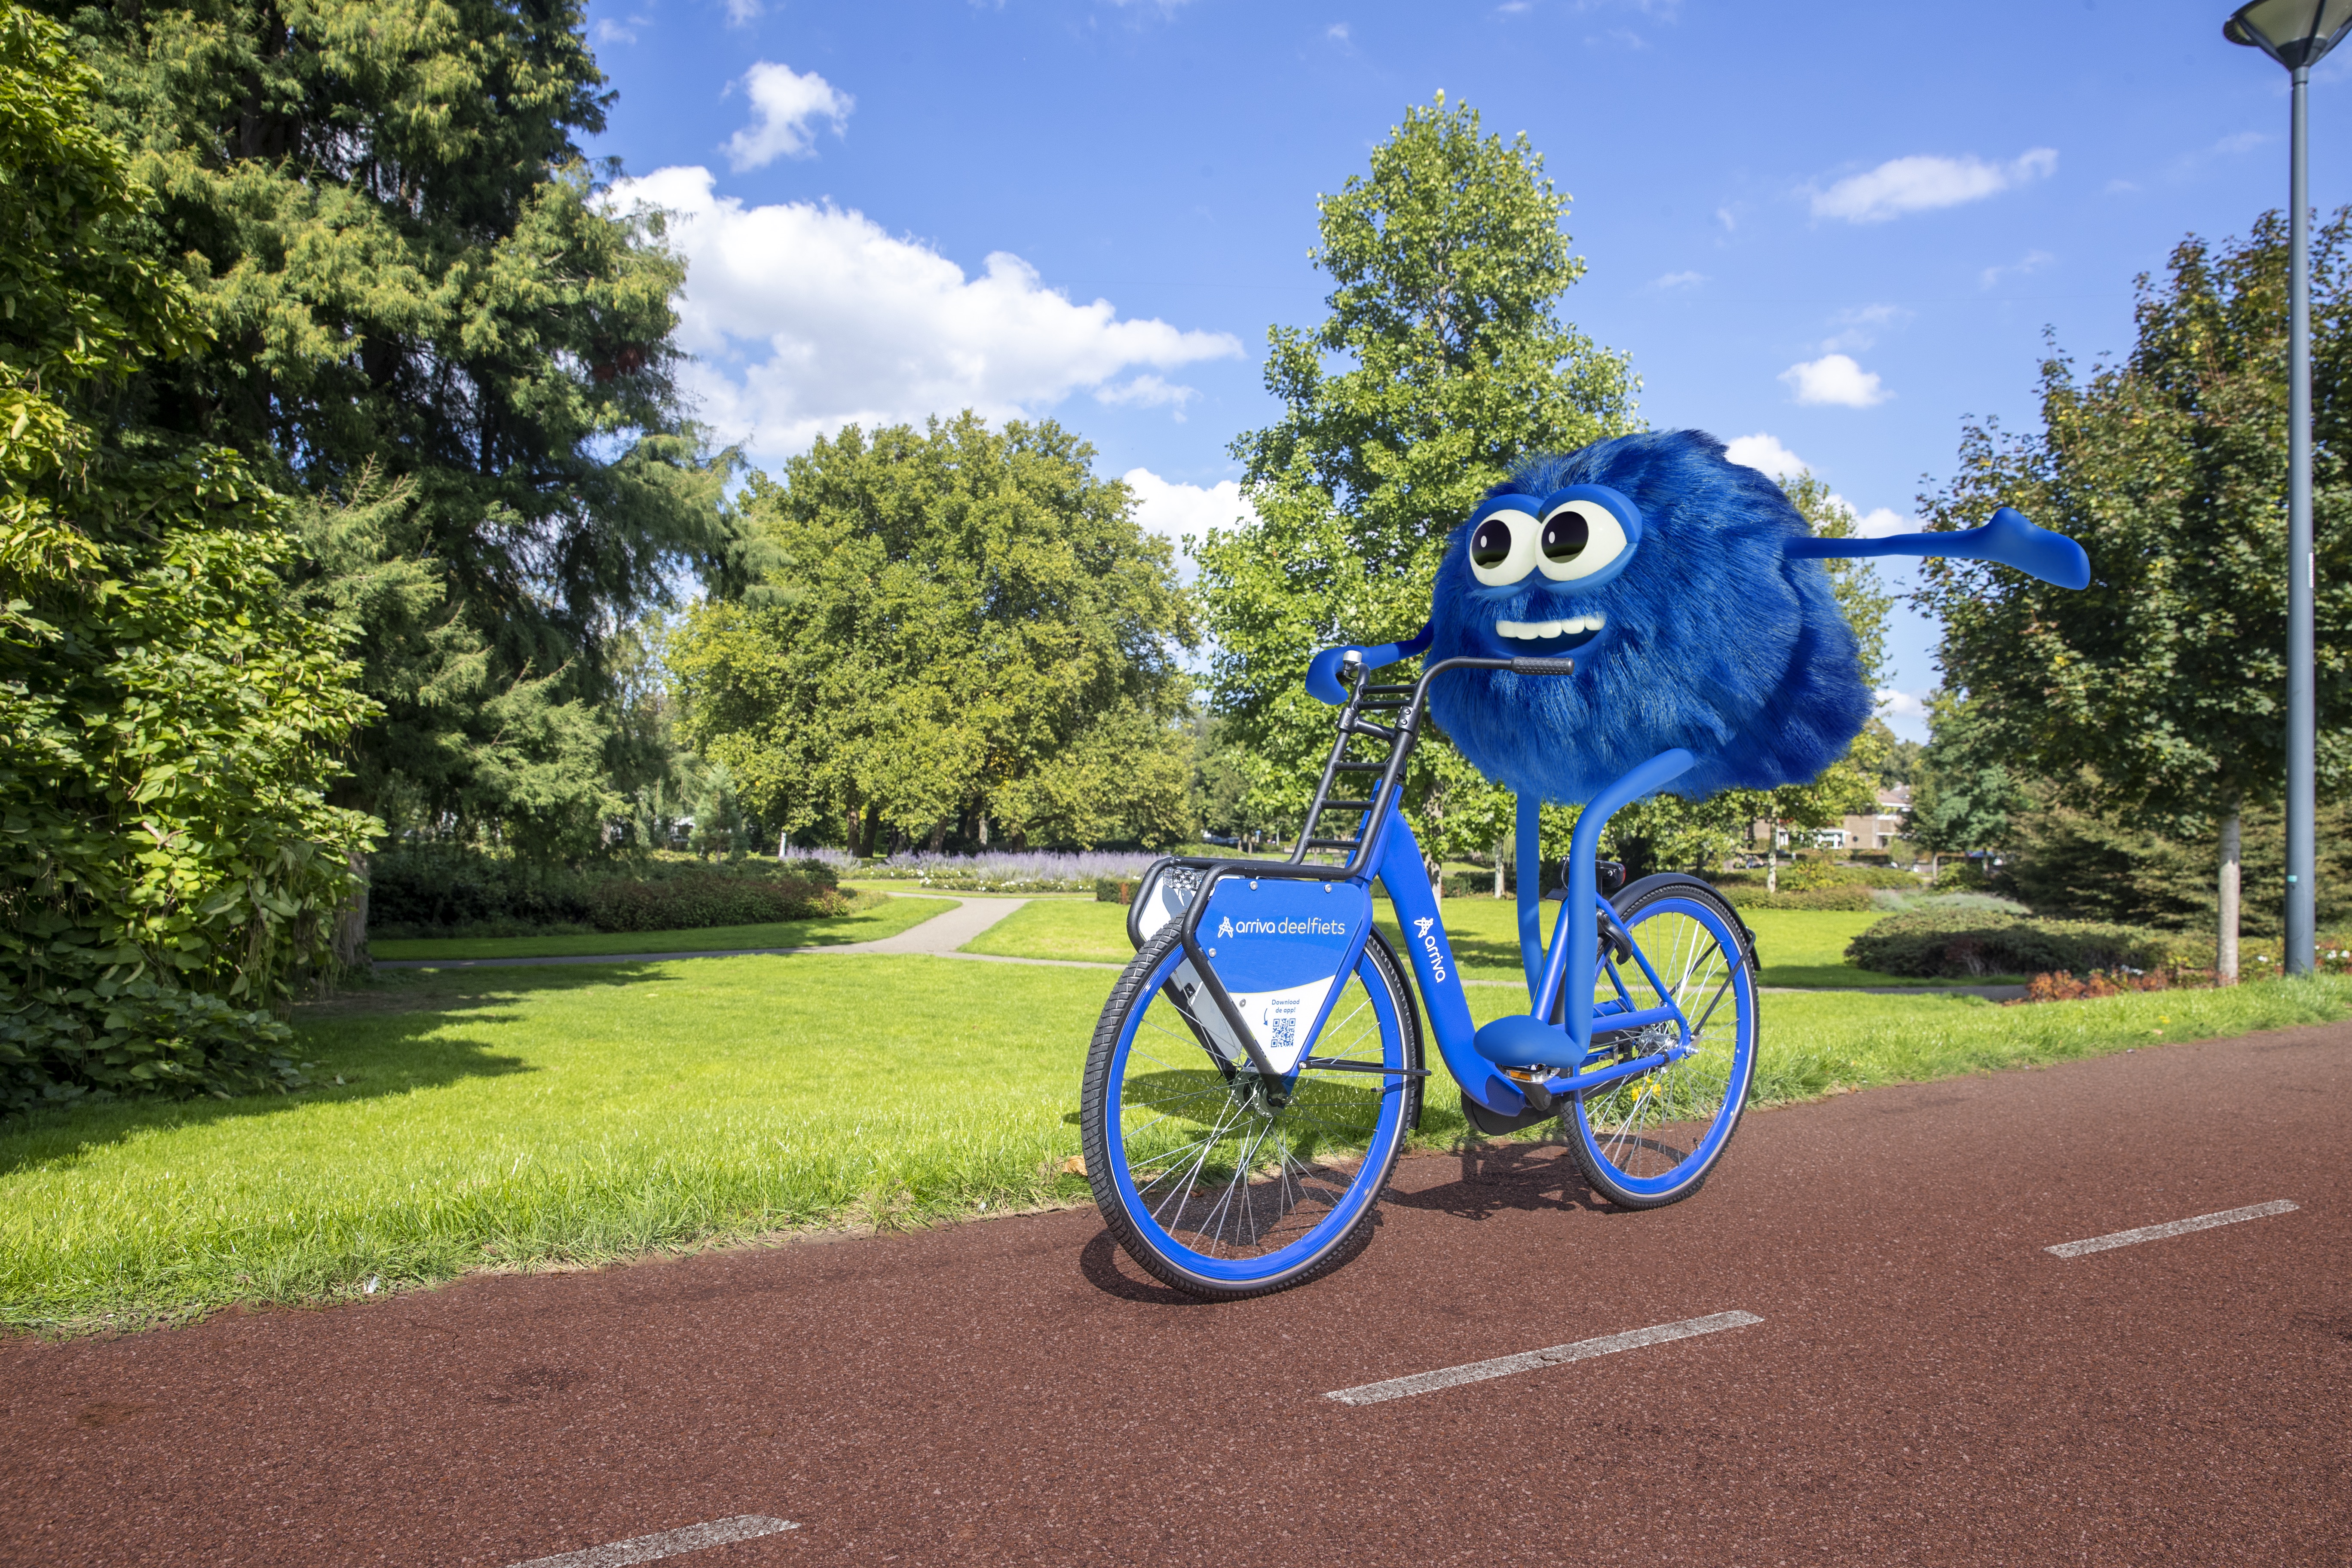 De mascotte van de Arriva-deelfiets, Dirk, zit op zo'n blauwe deelfiets en fiets blij door een stadspark.